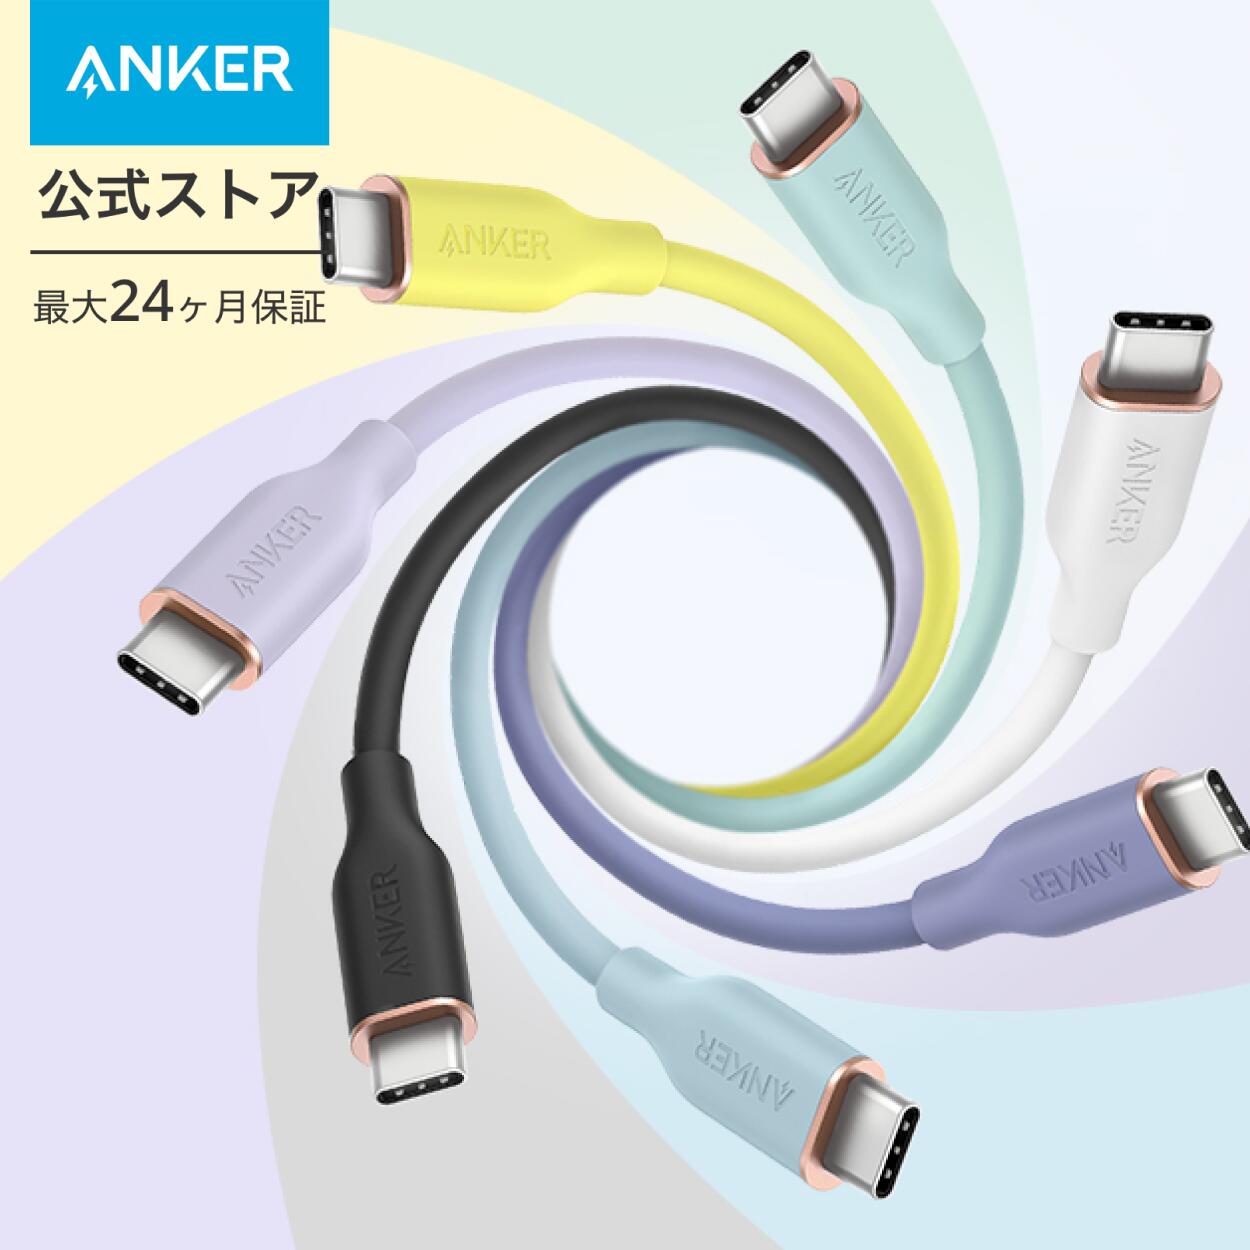 【6/1限定 最大10%OFFクーポン】【一部あす楽対応】Anker PowerLine III Flow USB-C & USB-C ケーブル Anker絡まないケーブル PD対応 シリコン素材採用100W Galaxy iPad Pro MacBookPro/Air 各種対応 0.9m/1.8m